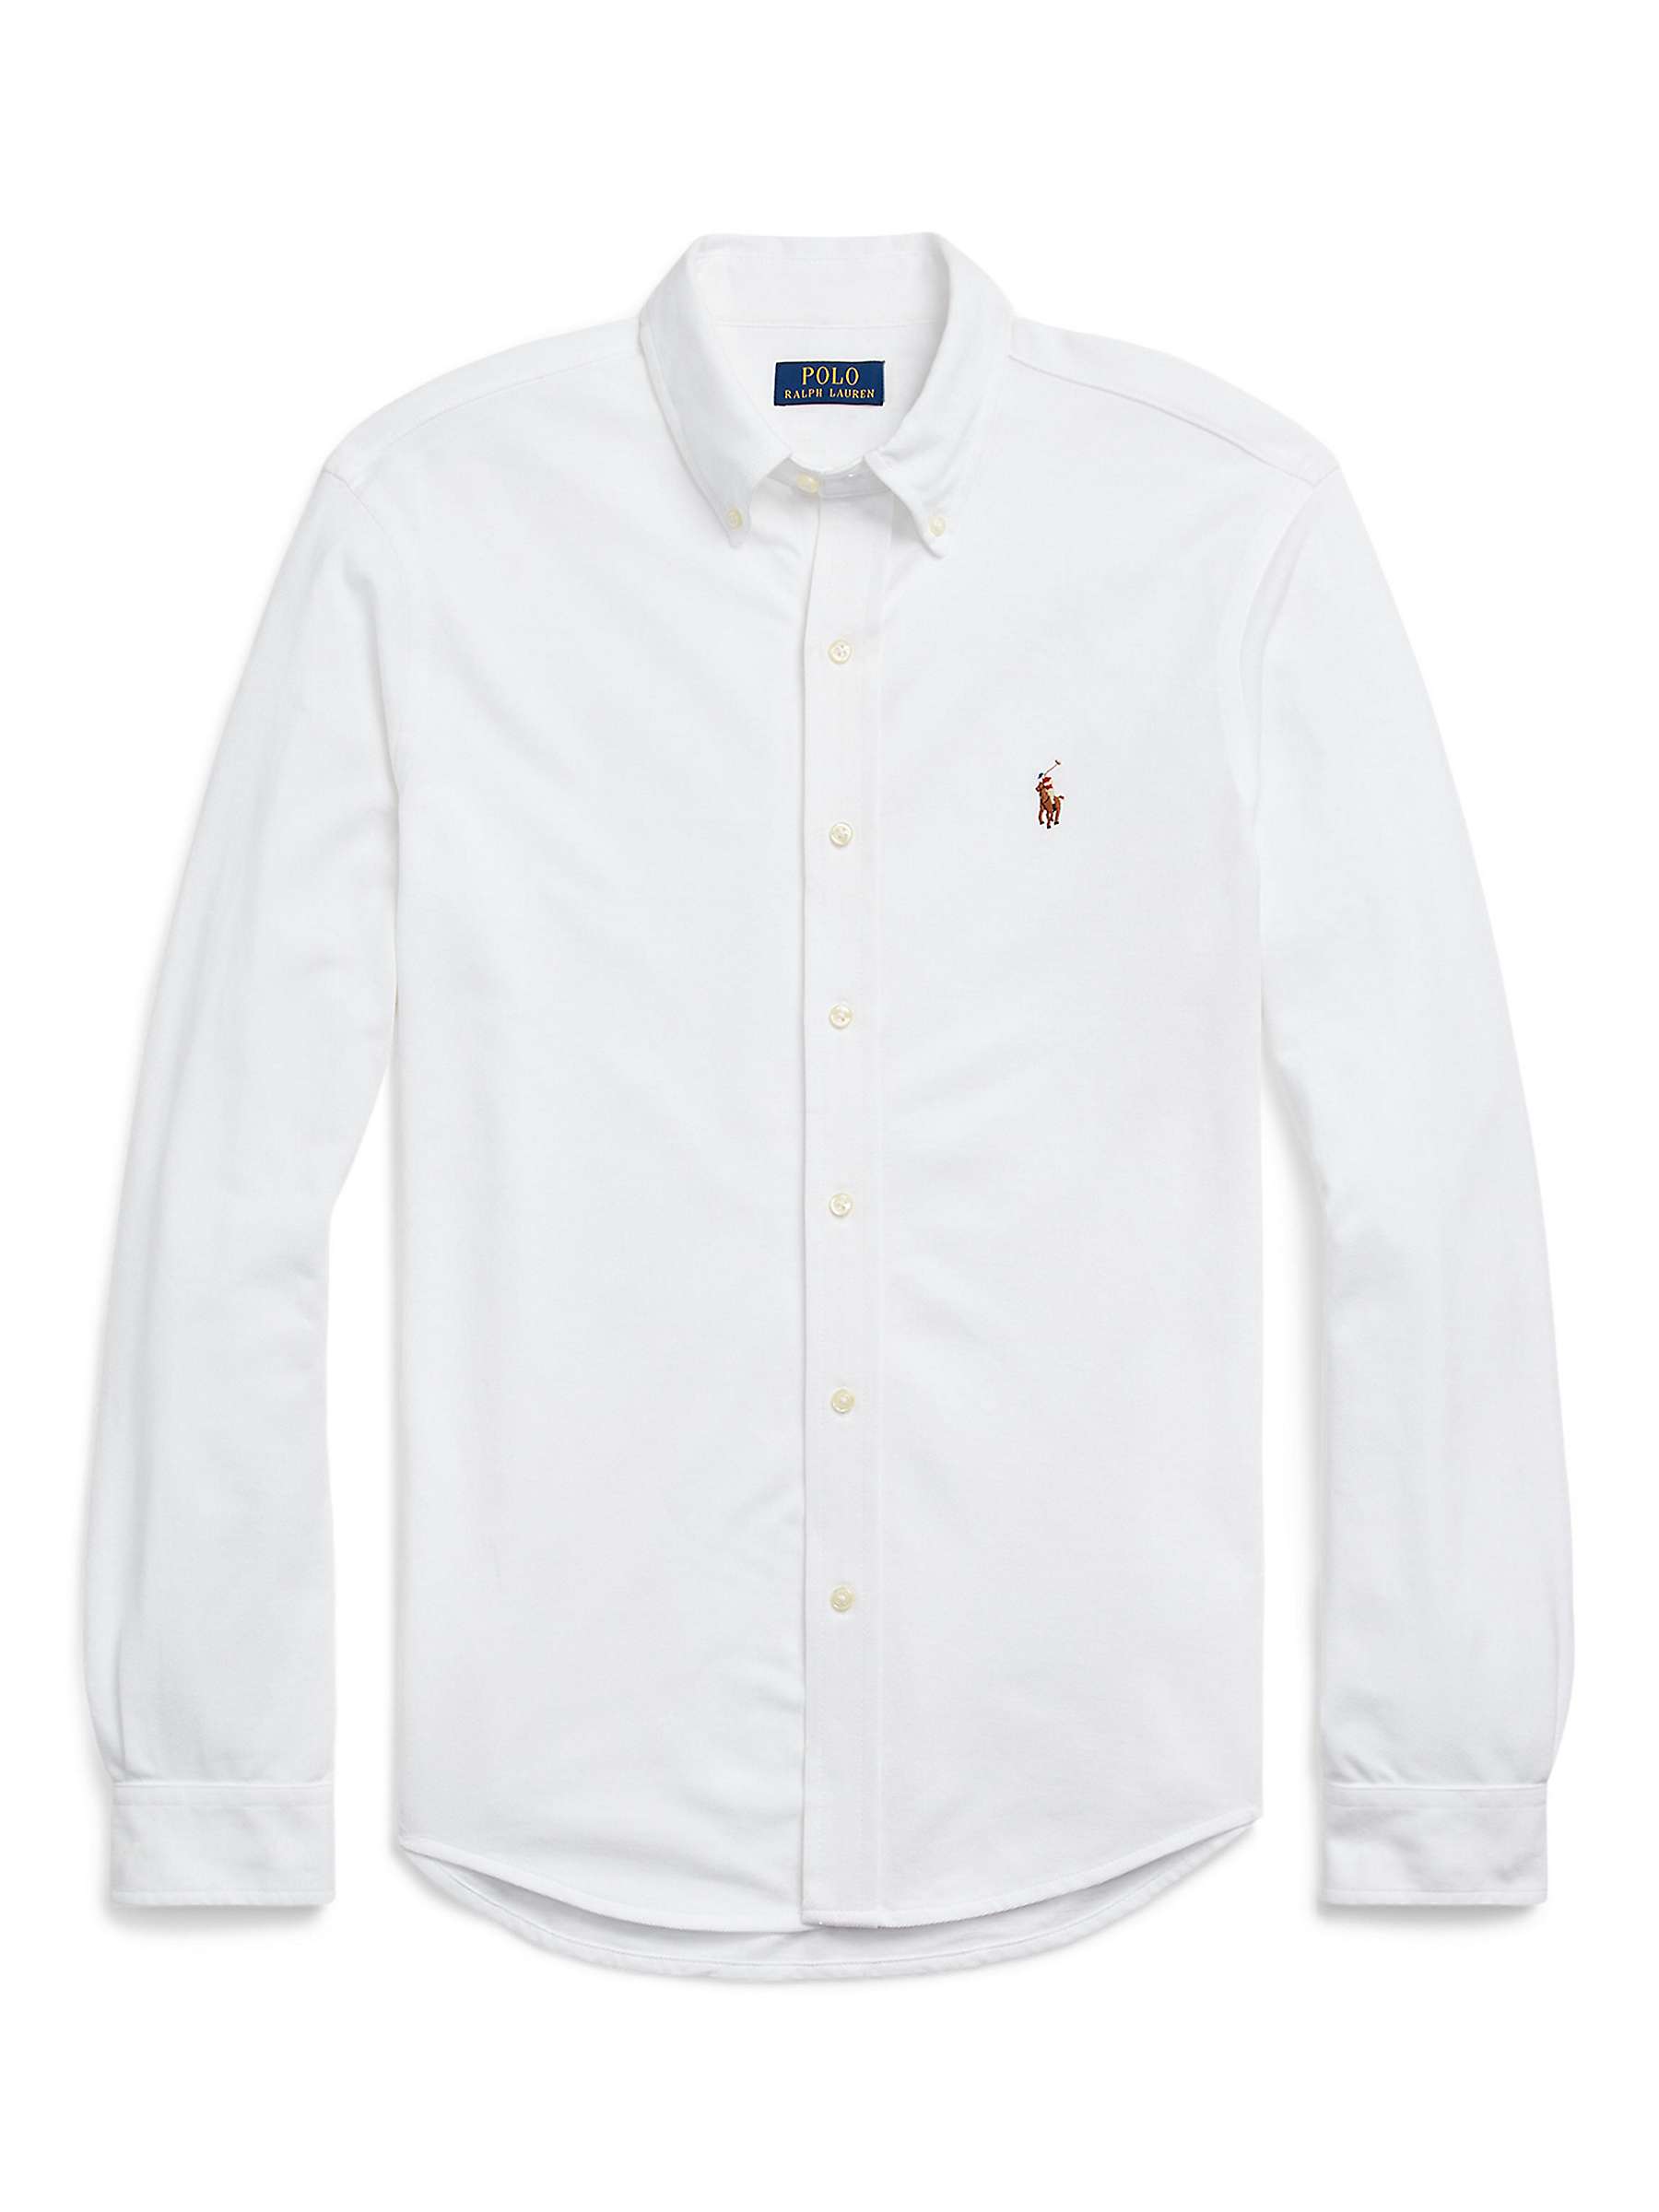 Buy Polo Ralph Lauren Long Sleeve Regular Shirt, White Online at johnlewis.com